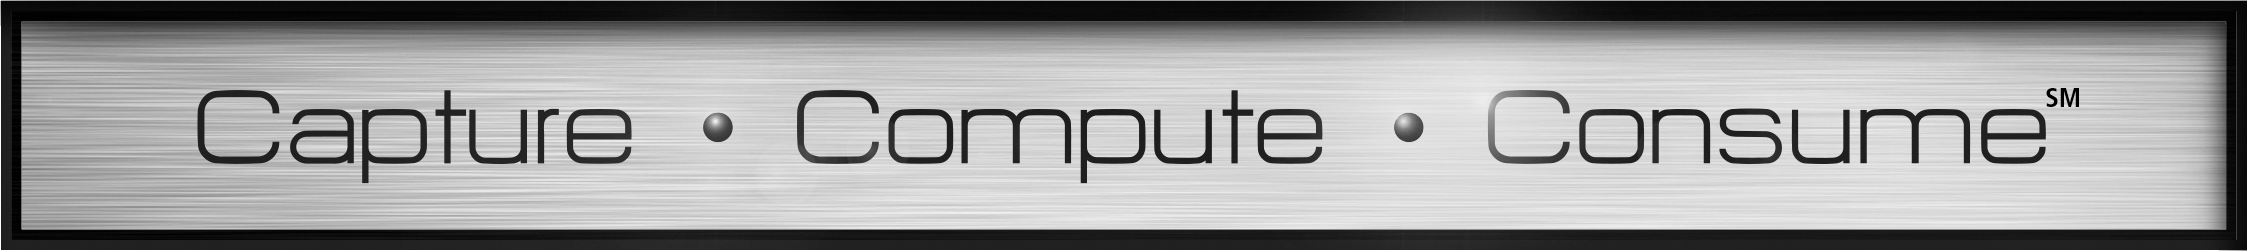 Capture | Consume | Compute